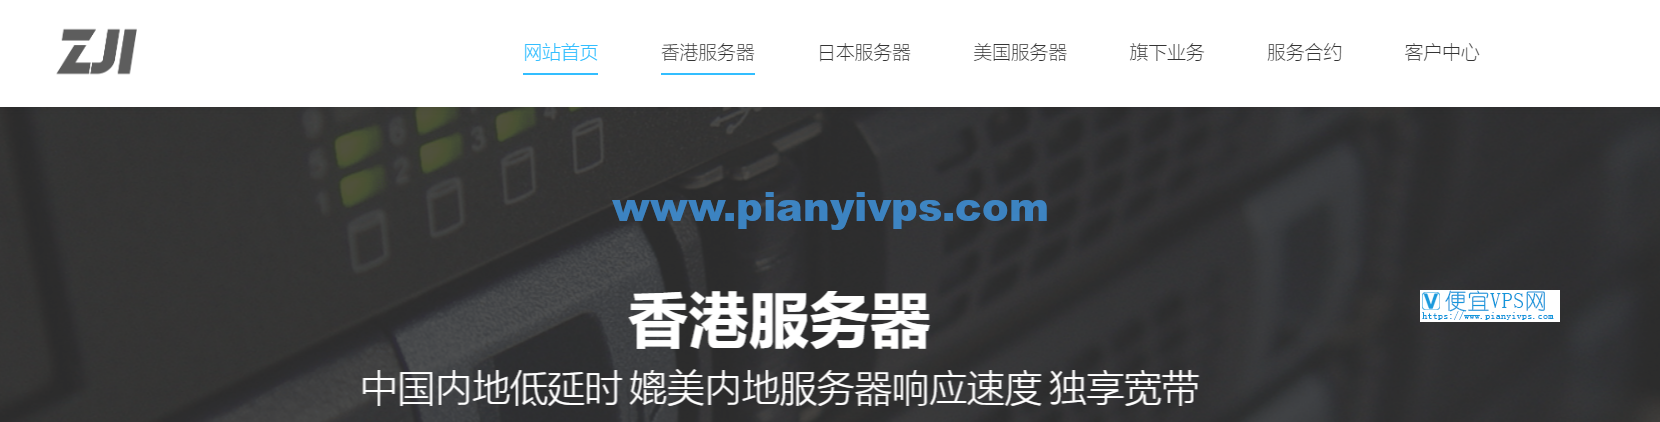 ZJI 香港葵湾服务器 6 折特惠，最低月付 450 元，4C 站群服务器可选 121 个 IP